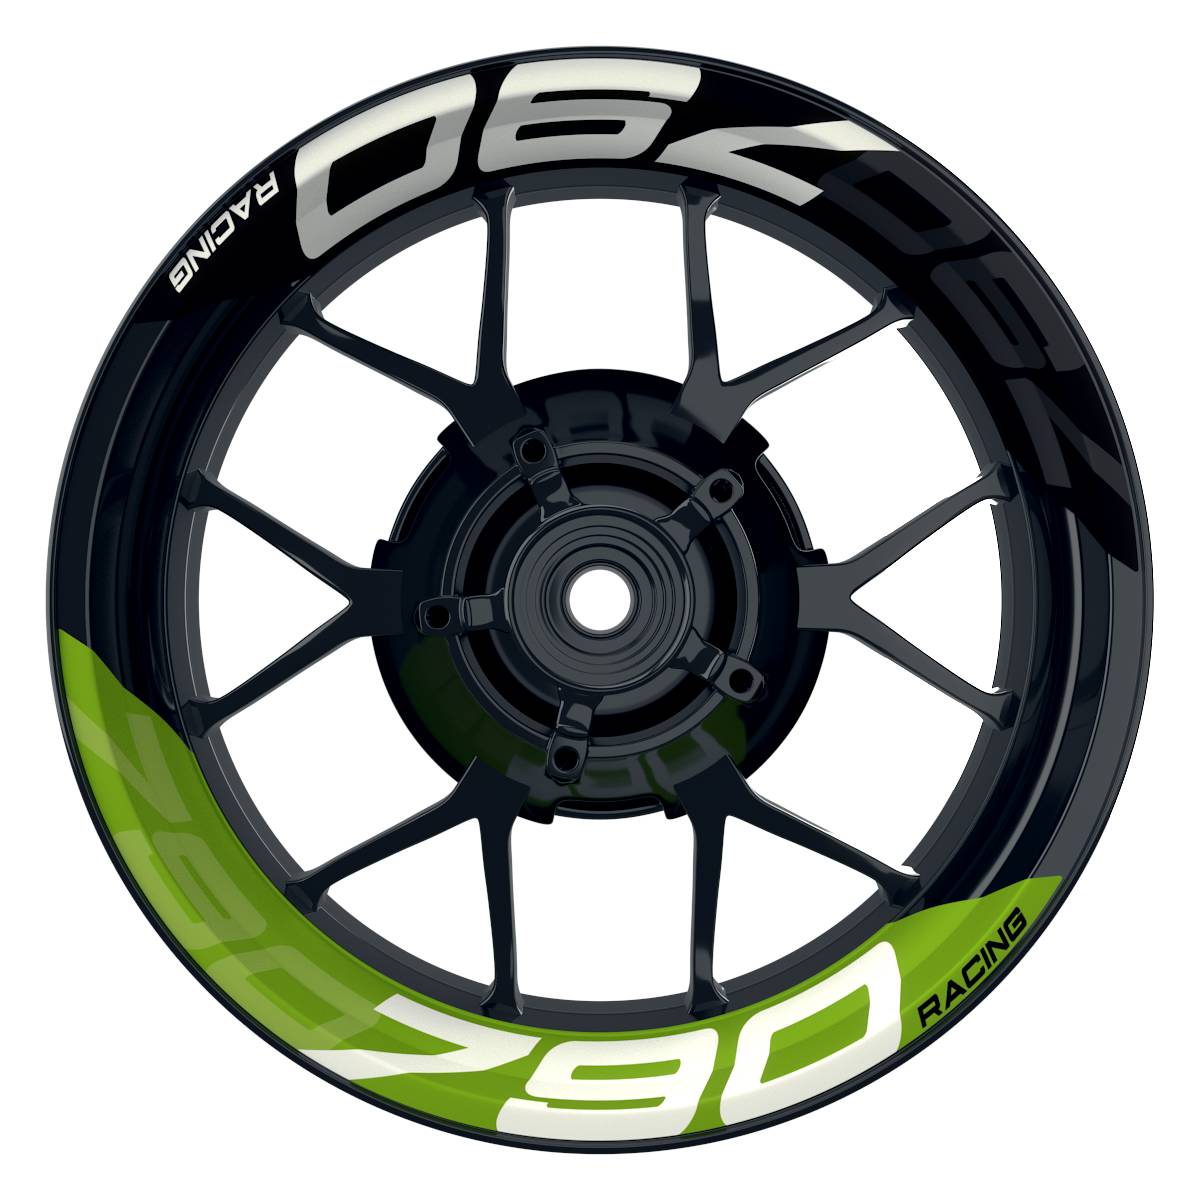 Wheelsticker Felgenaufkleber KTM Racing 790 halb halb V2 schwarz gruen Frontansicht